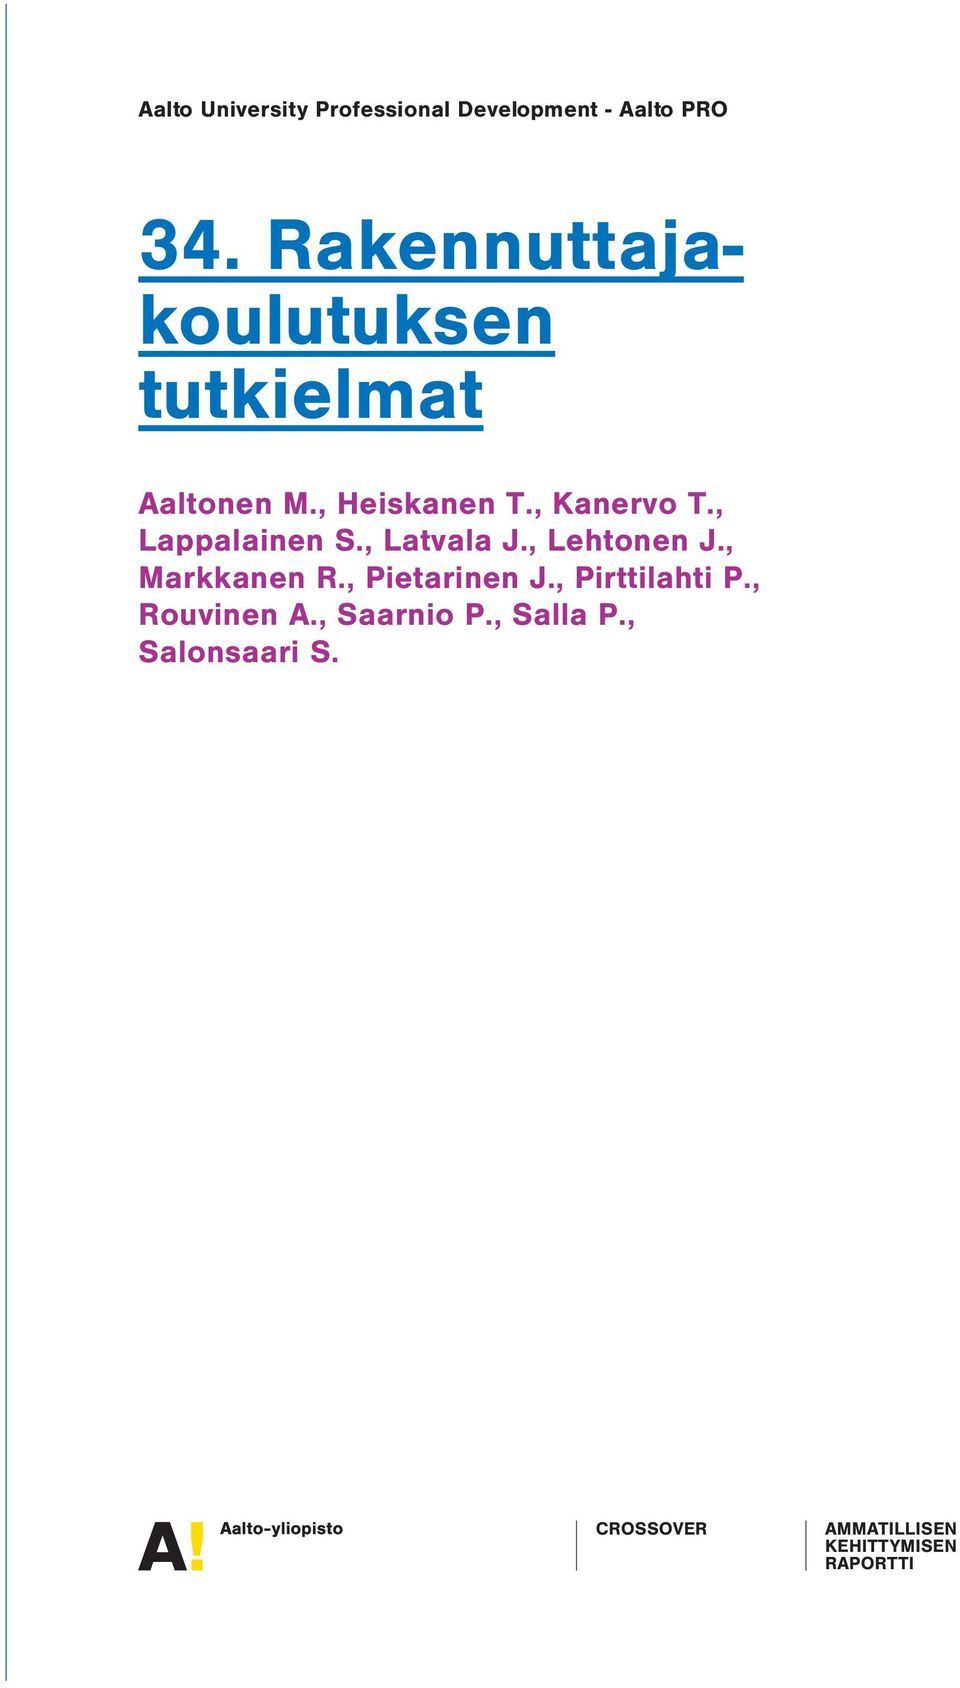 , Lappalainen S., Latvala J., Lehtonen J., Markkanen R., Pietarinen J.